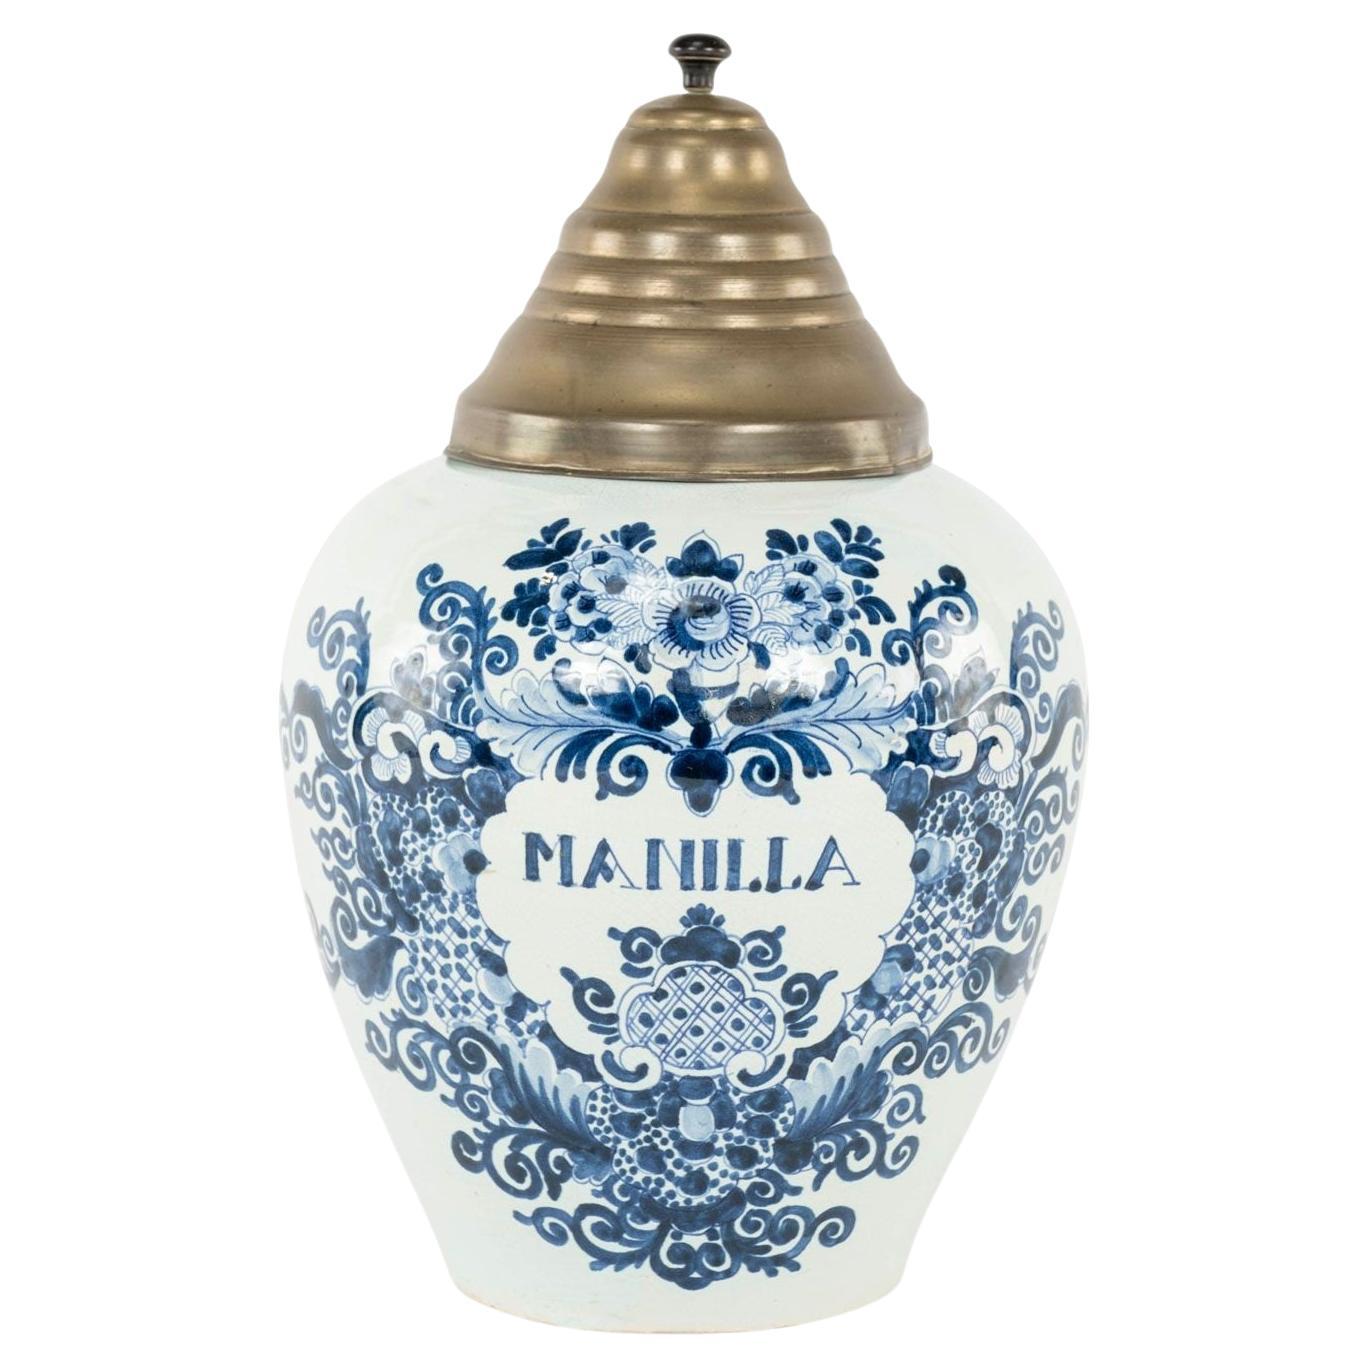 Delft Blue and White "Manilla" Tobacco Jar For Sale